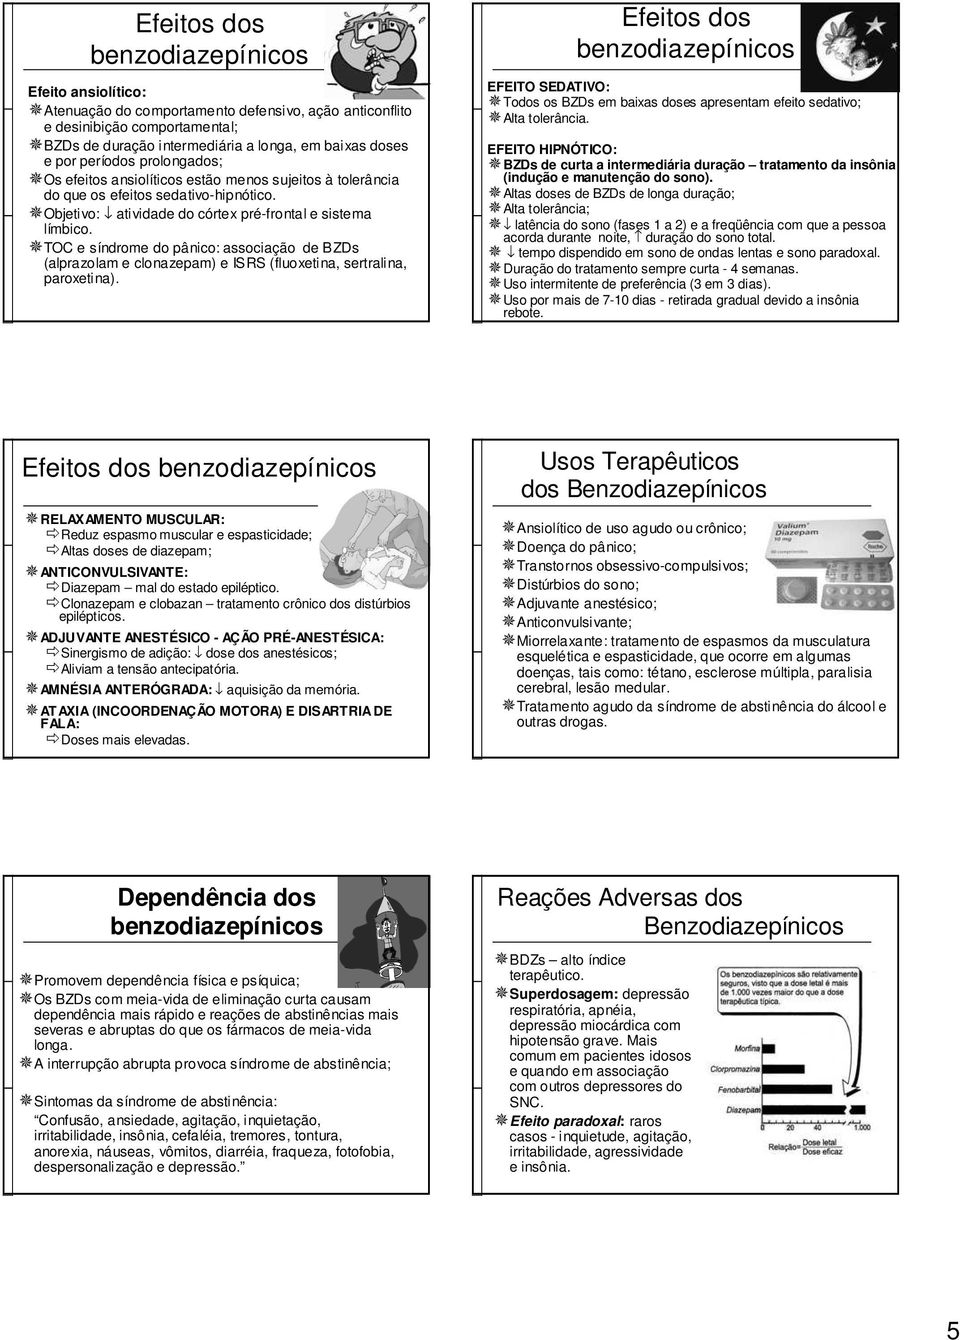 TOC e síndrome do pânico: associação de BZDs (alprazolam e clonazepam) e ISRS (fluoxetina, sertralina, paroxetina).